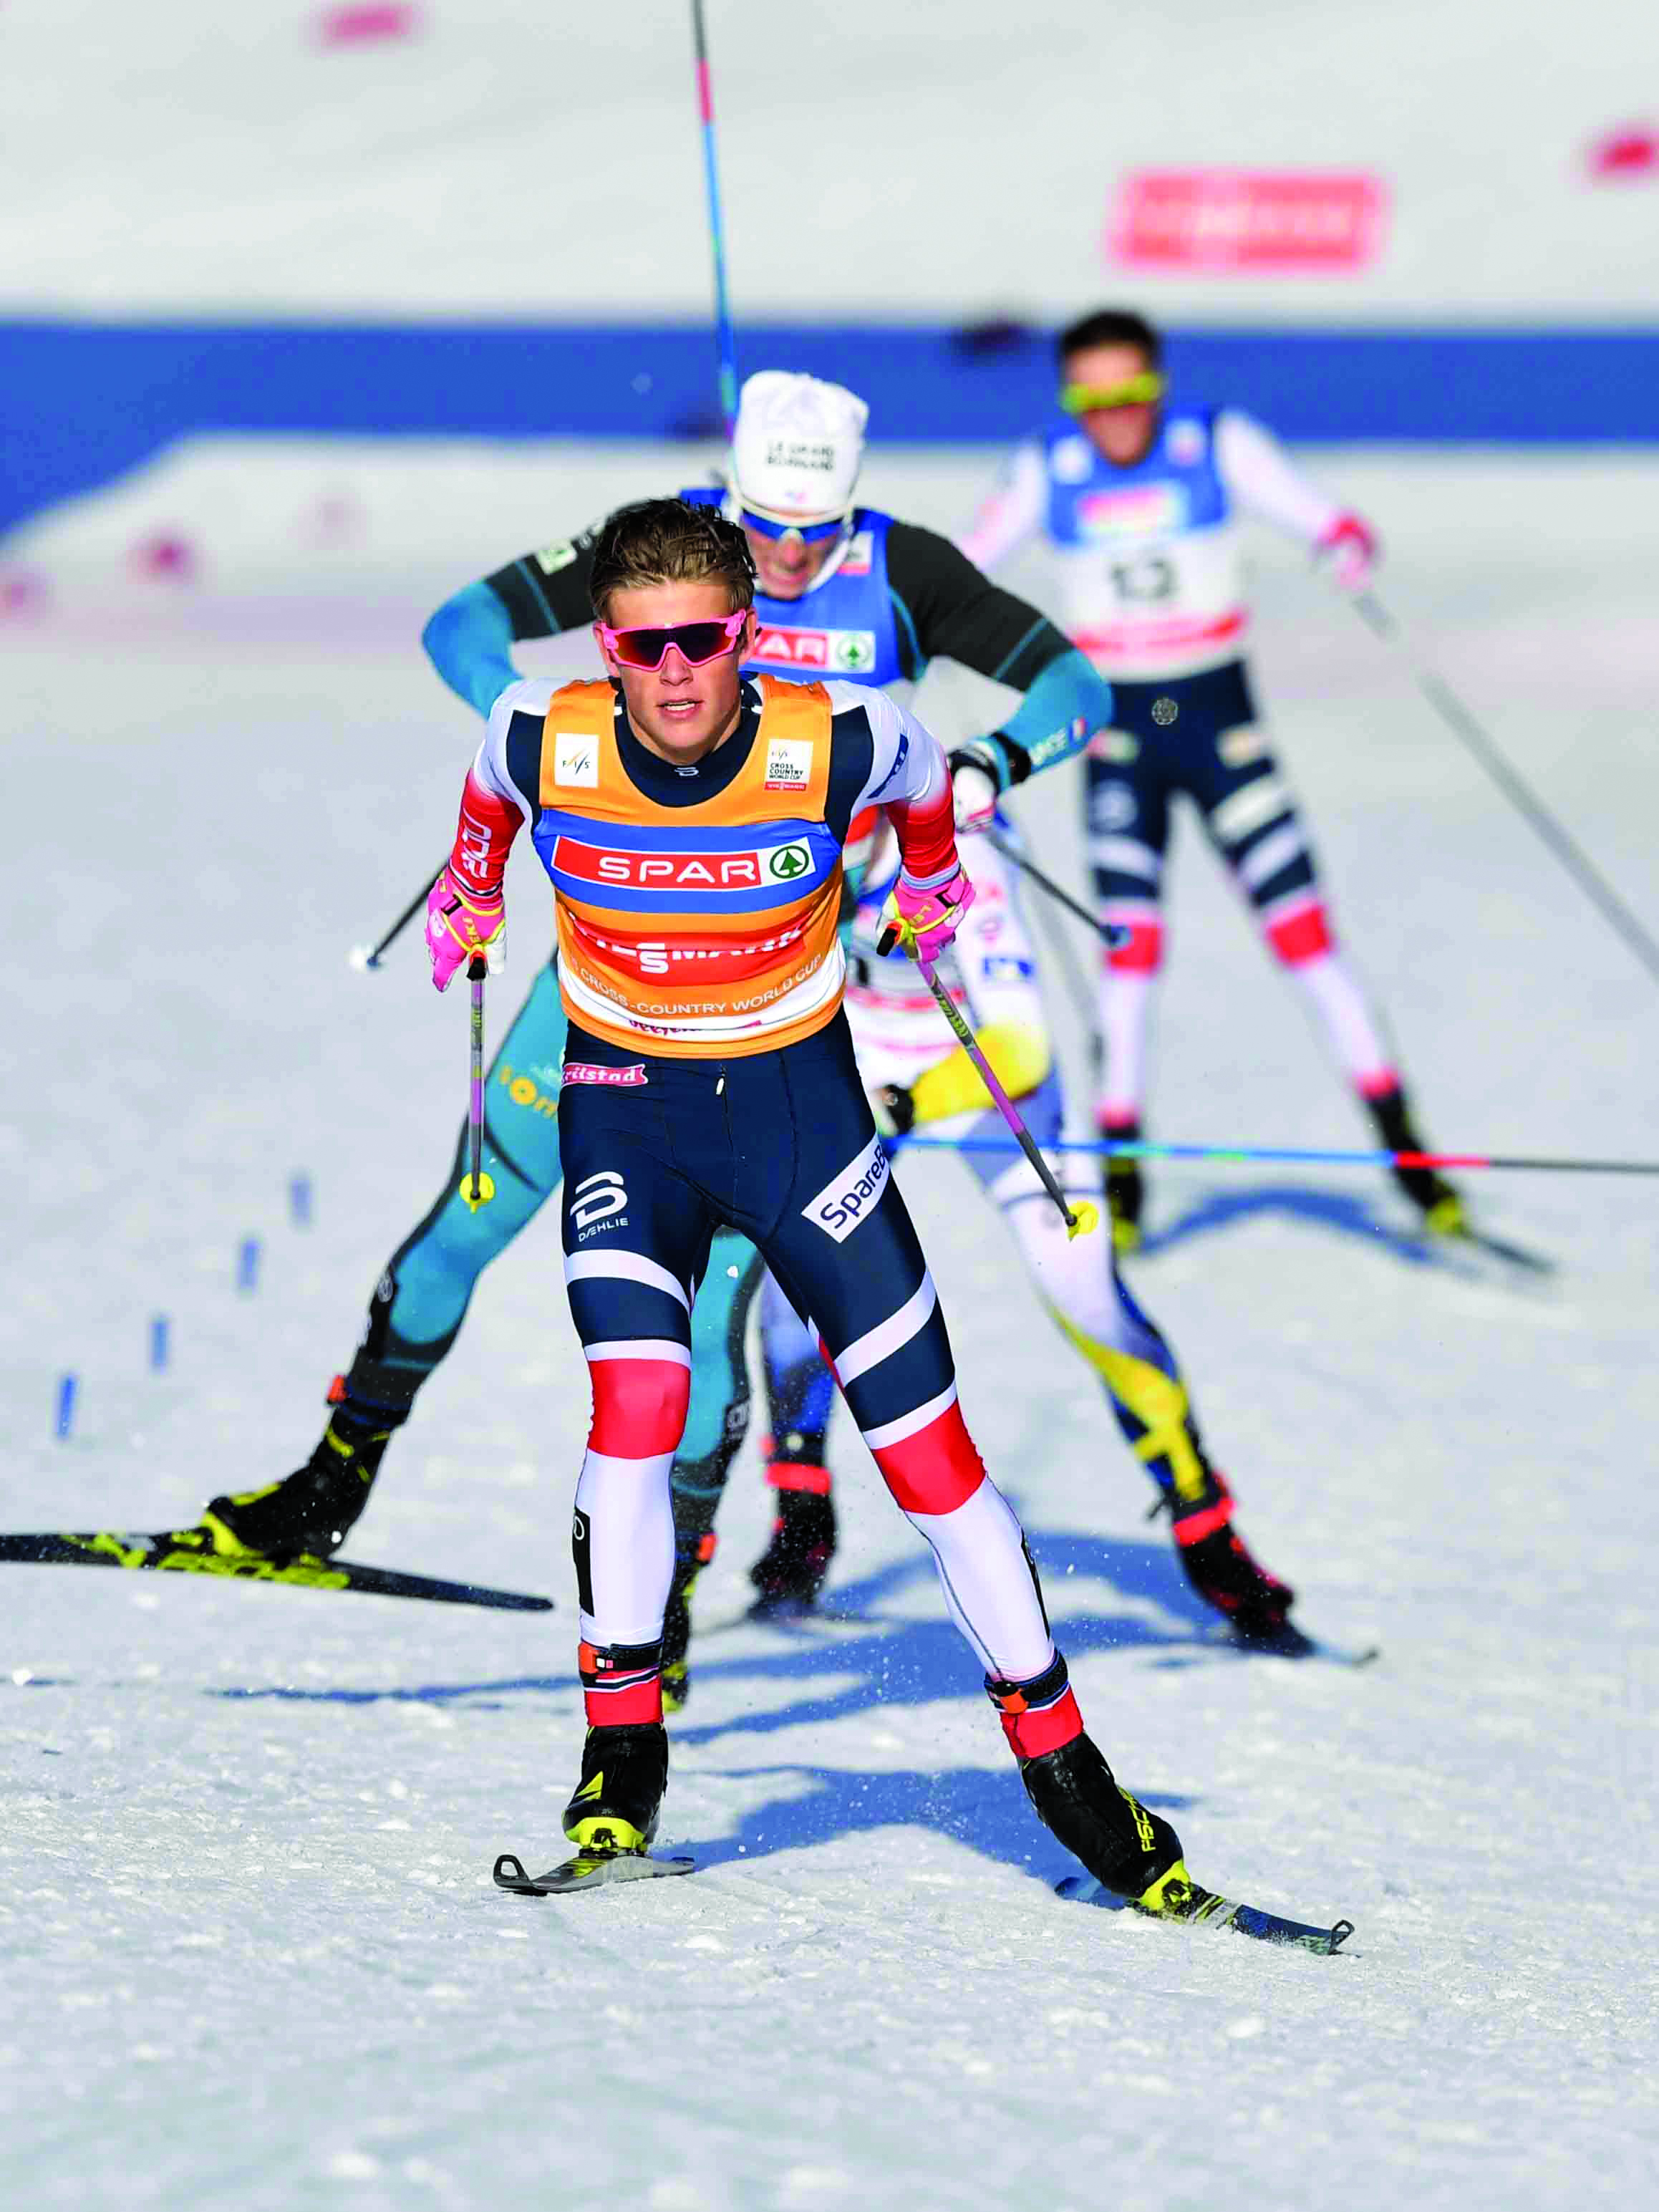 Οι 23οι Χειμερινοί Ολυμπιακοί Αγώνες στην ΕΡΤ